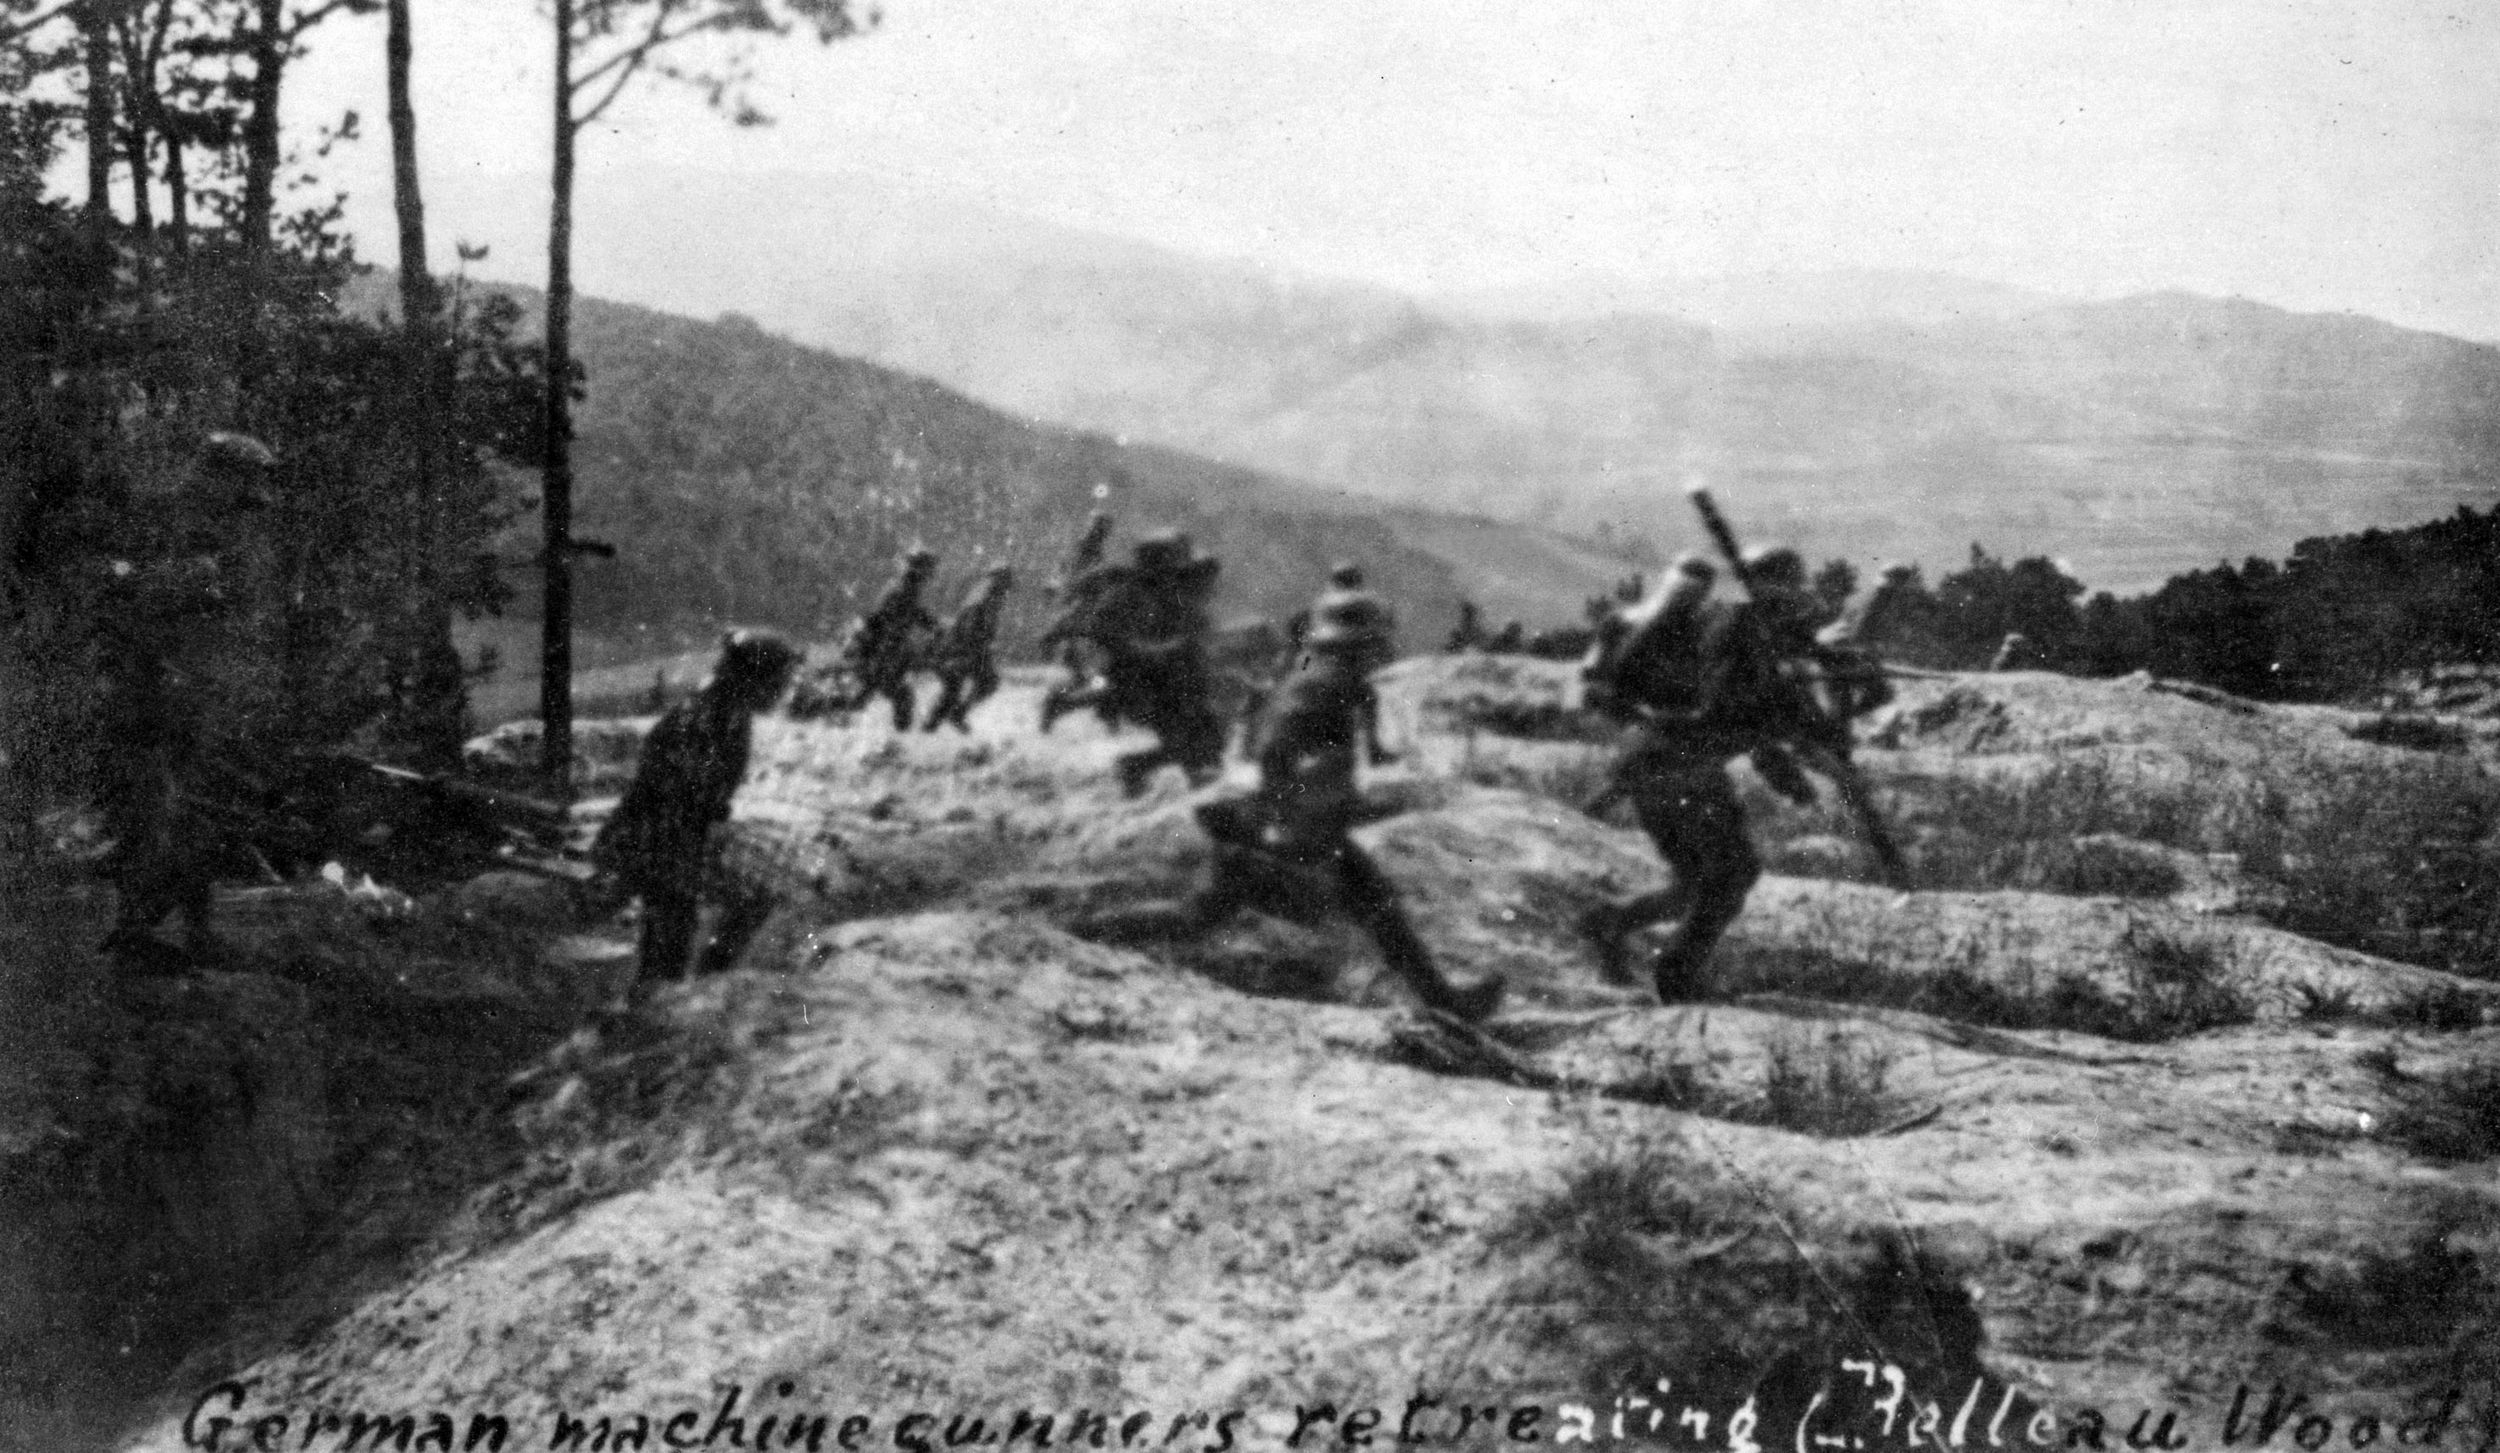 German machine gunners in full flight from American troops at Belleau Wood.